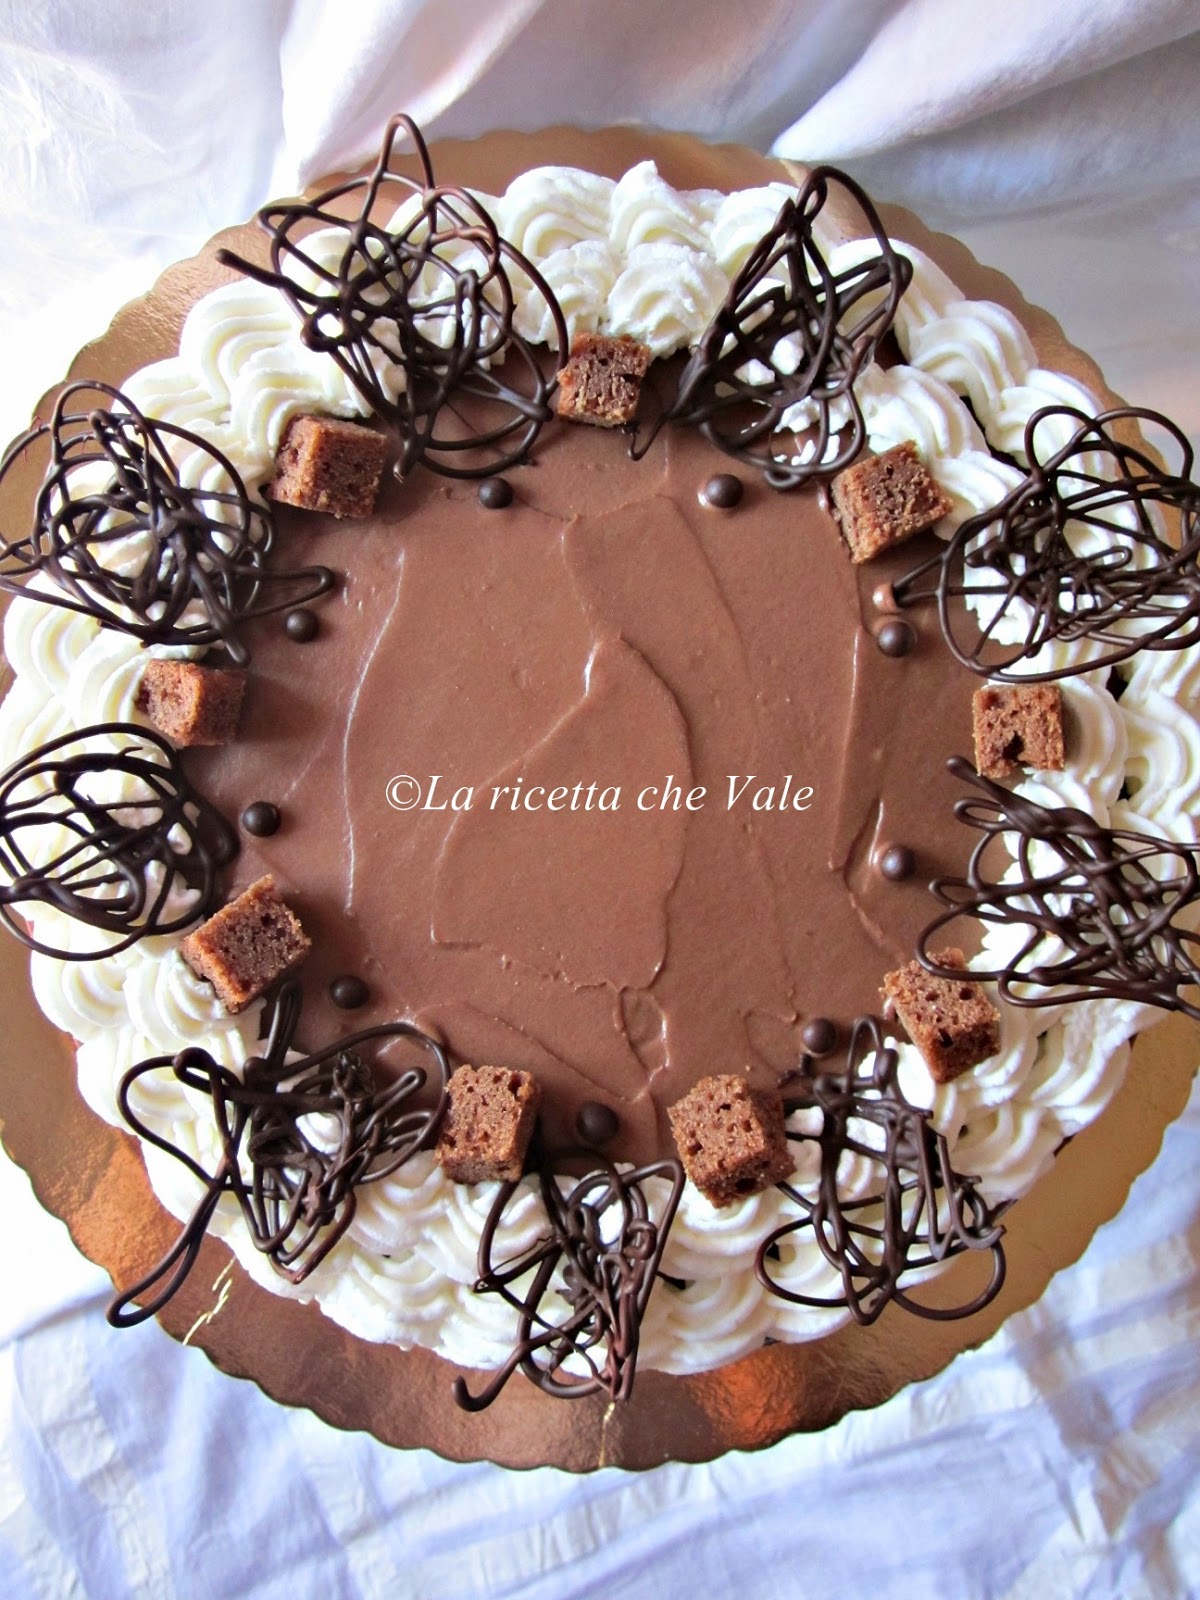 Mud cake al gianduia, cioccolato bianco e pralinato alle mandorle e nocciole